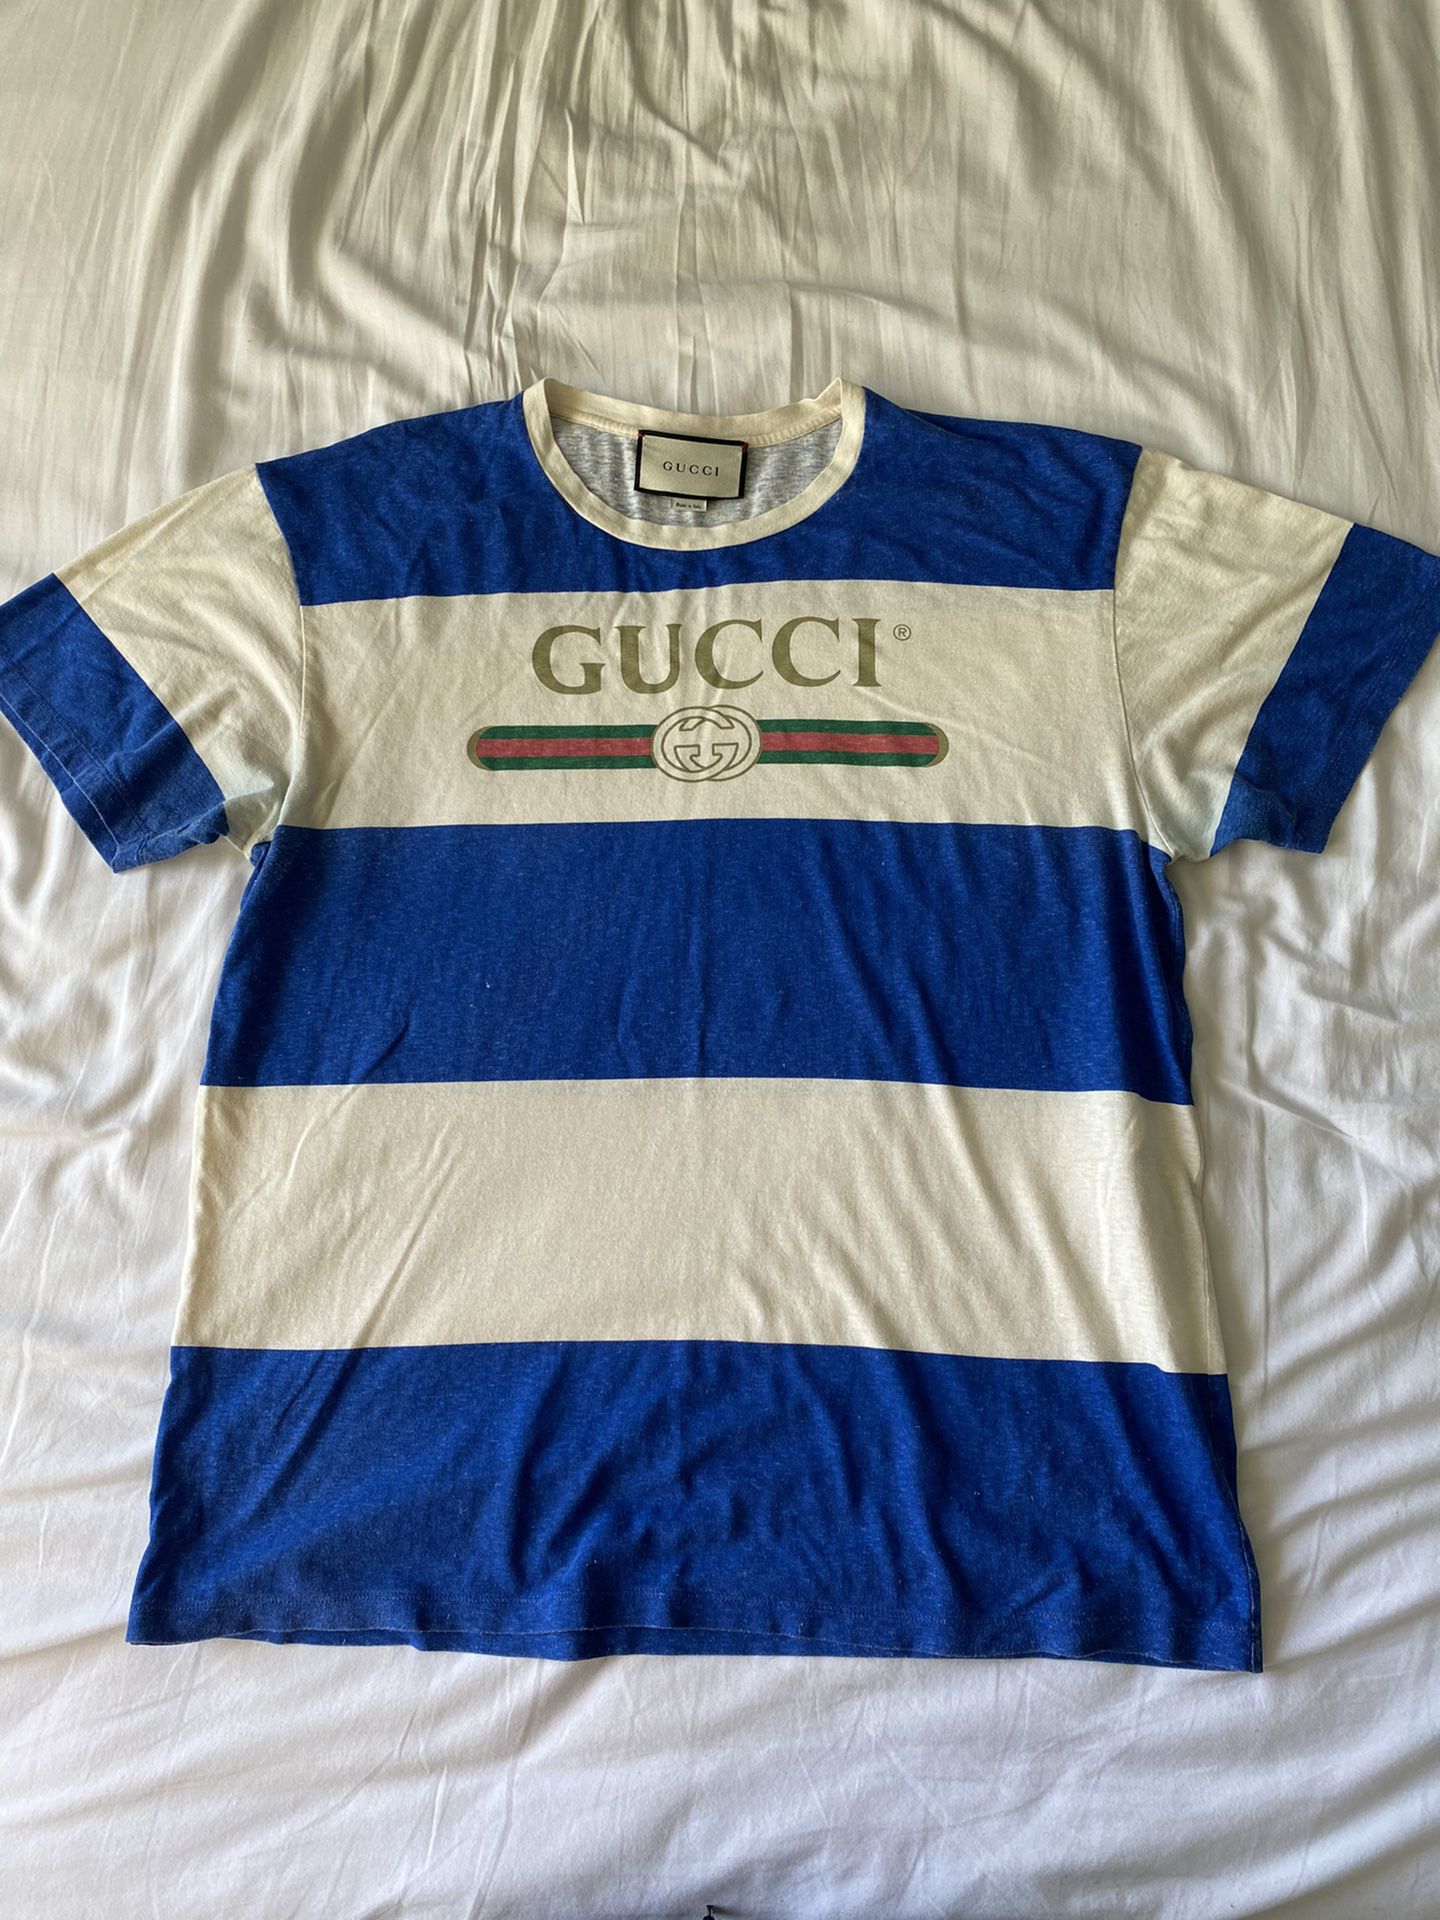 Gucci T-shirt Men’s L 